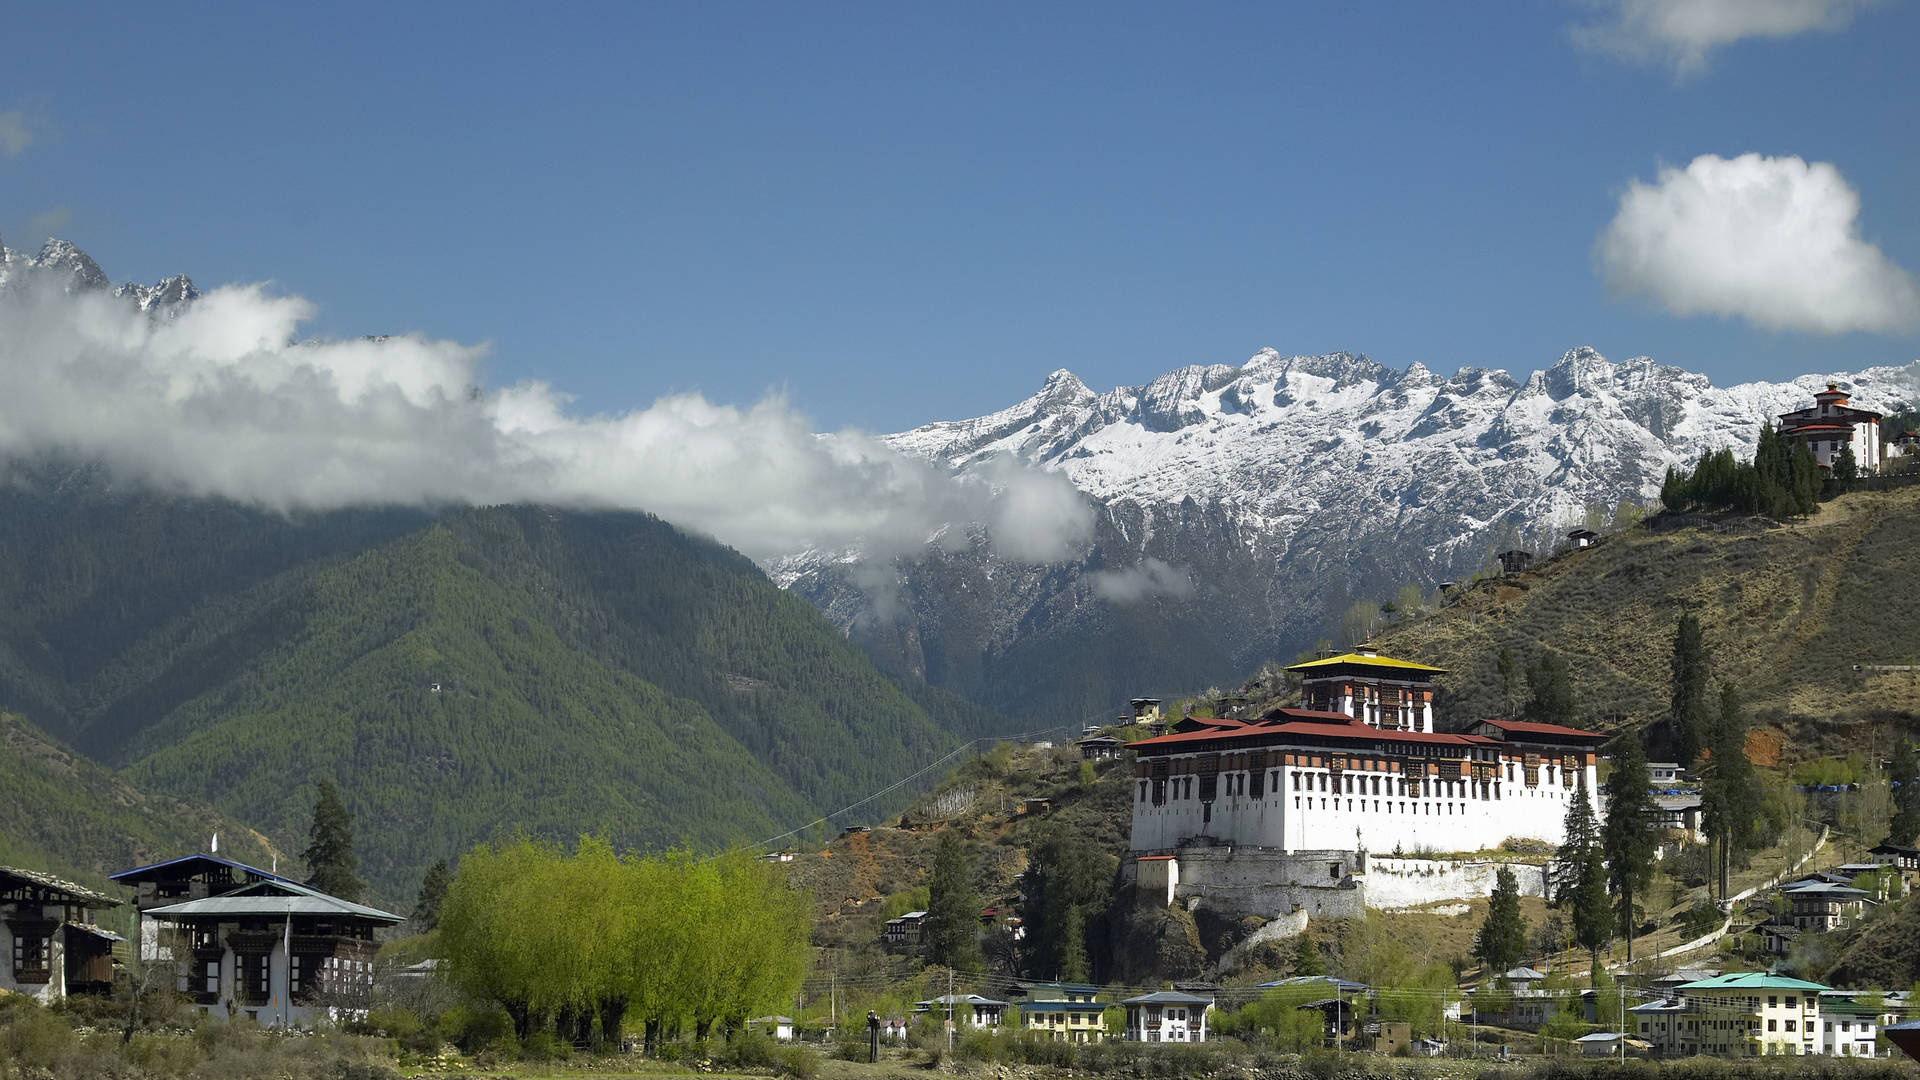 Classic Bhutan route, Au0026E Adventurous travel, Cultural heritage, Experiential journey, 1920x1080 Full HD Desktop